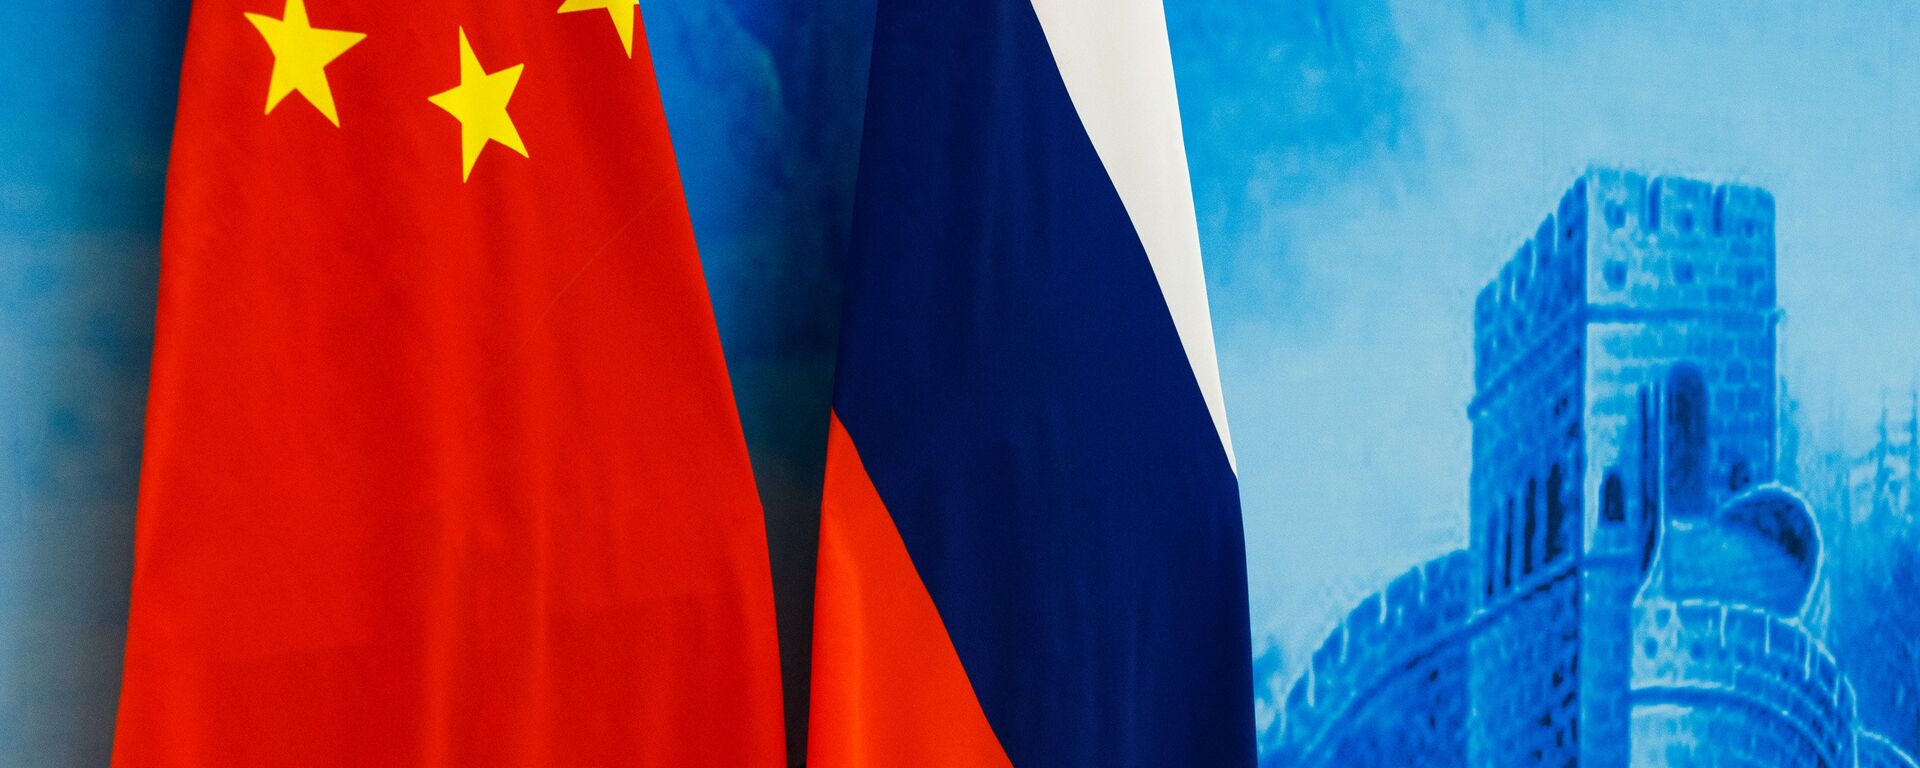 Las banderas de Rusia y China - Sputnik Mundo, 1920, 24.12.2021